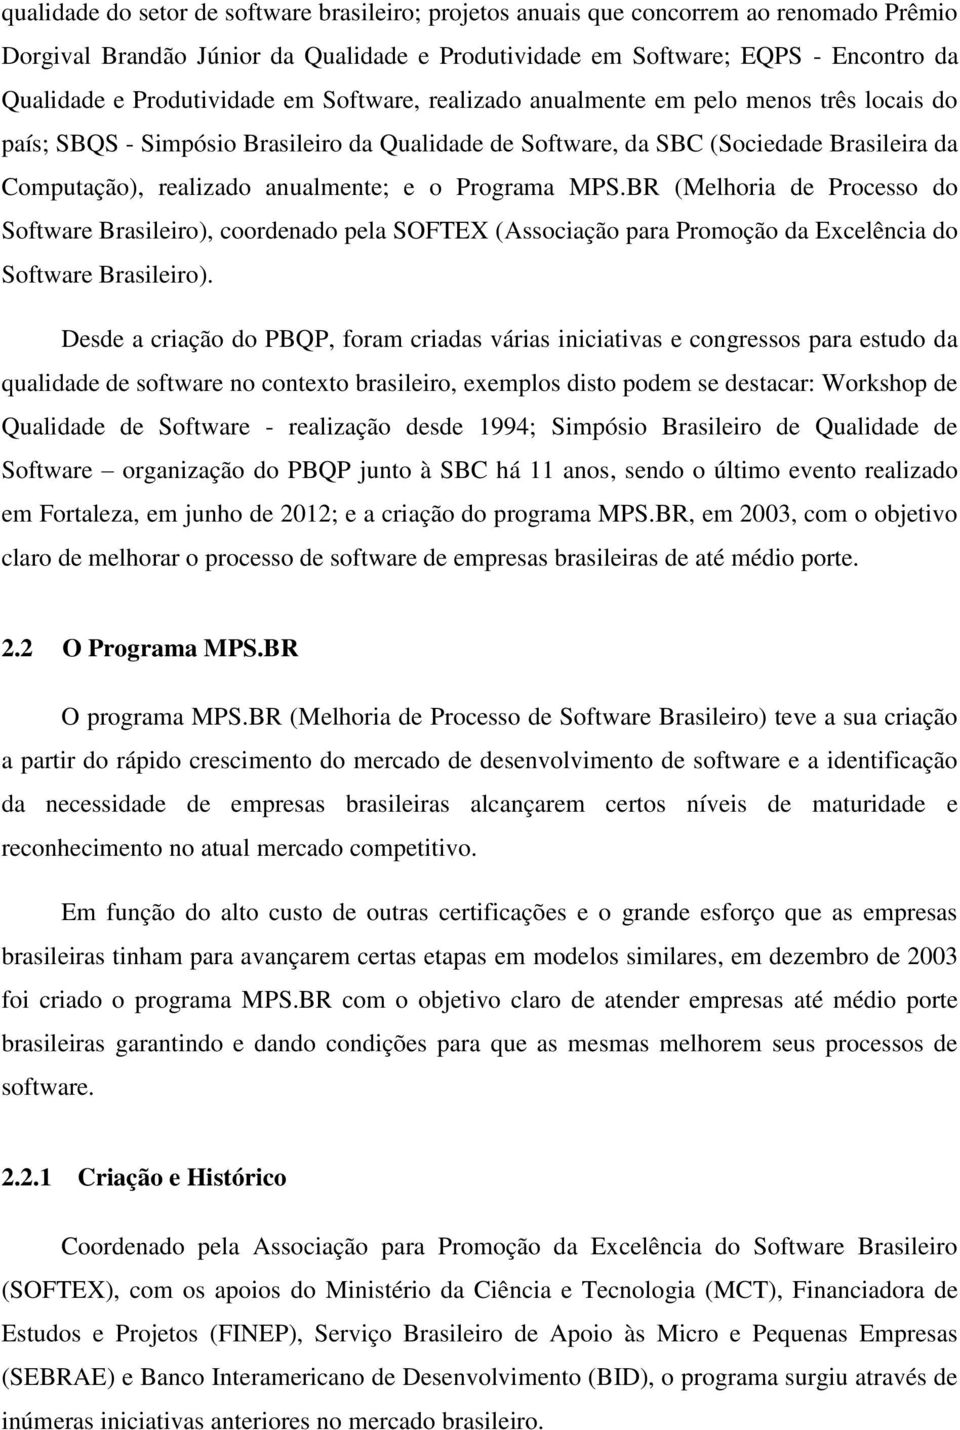 anualmente; e o Programa MPS.BR (Melhoria de Processo do Software Brasileiro), coordenado pela SOFTEX (Associação para Promoção da Excelência do Software Brasileiro).